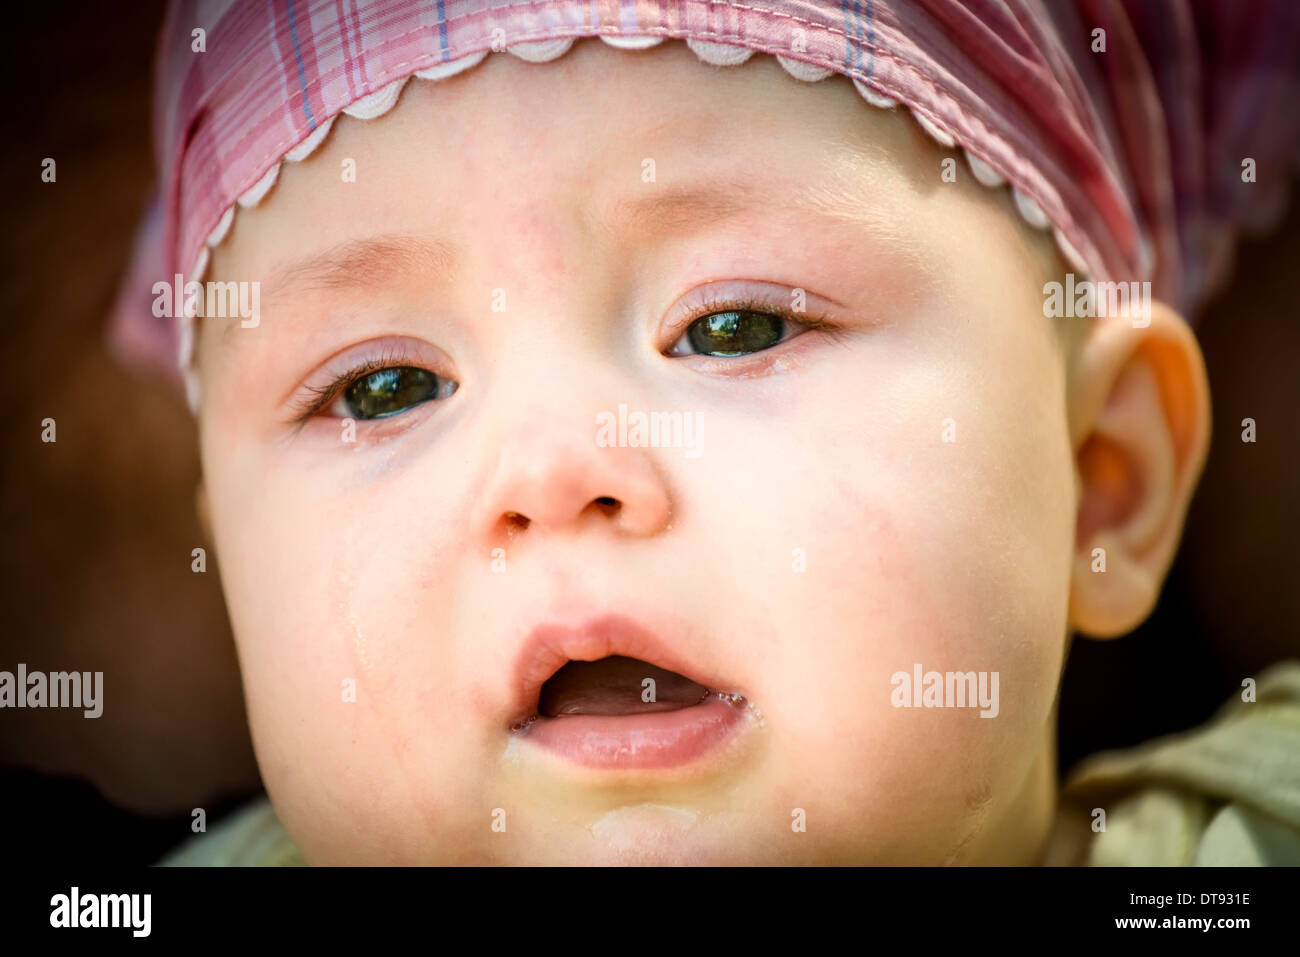 Infelice baby portrait - dettaglio del viso, delle lacrime visibili Foto Stock